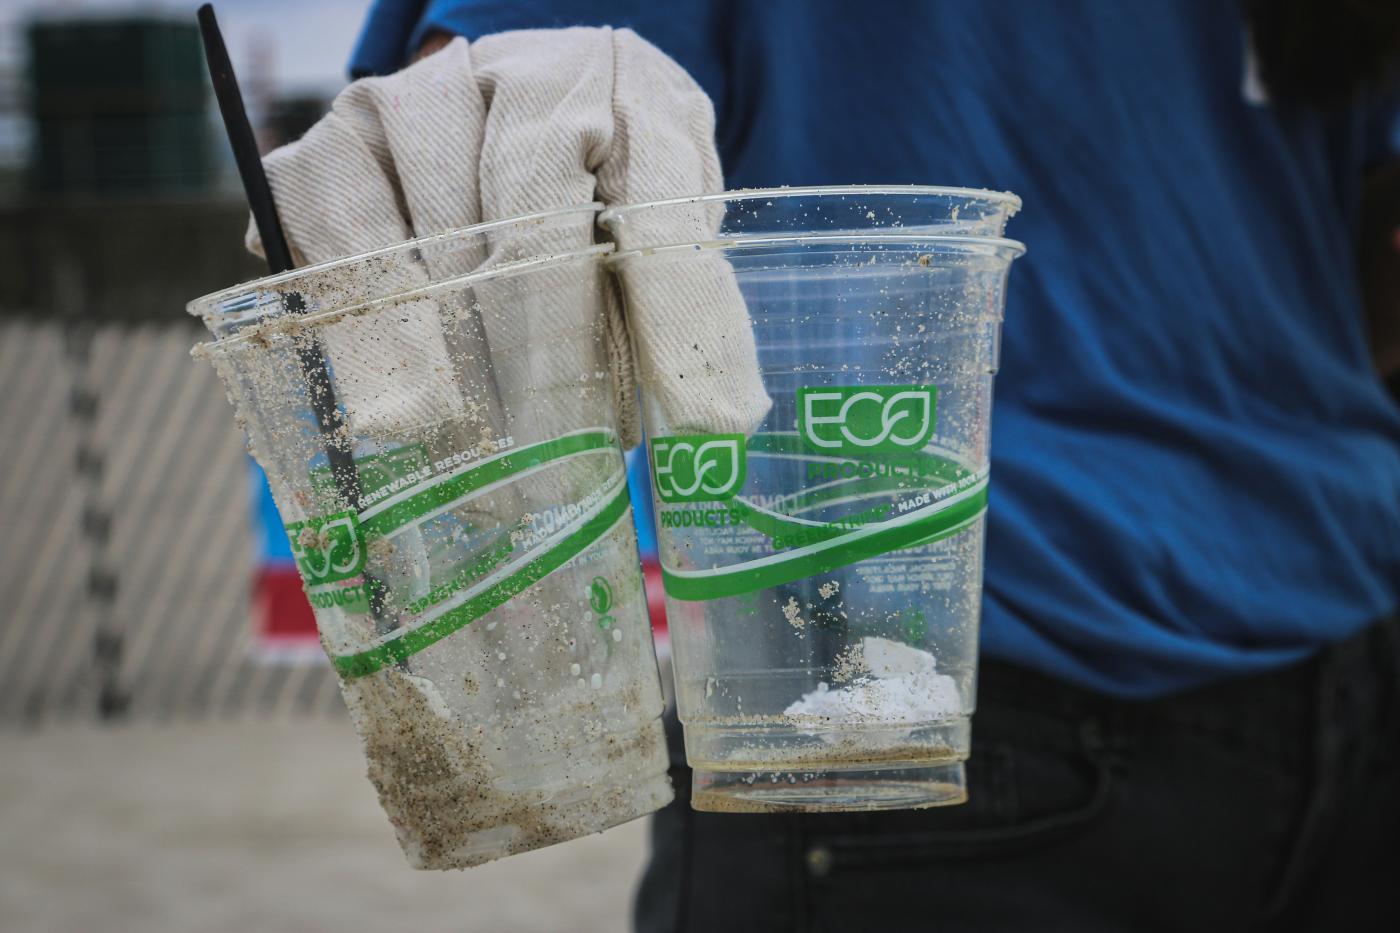 Zwei Plastik-Becher mit der grünen Aufschrift "Eco" werden von einer Hand in Handschuhen in die Kamera gehalten. 